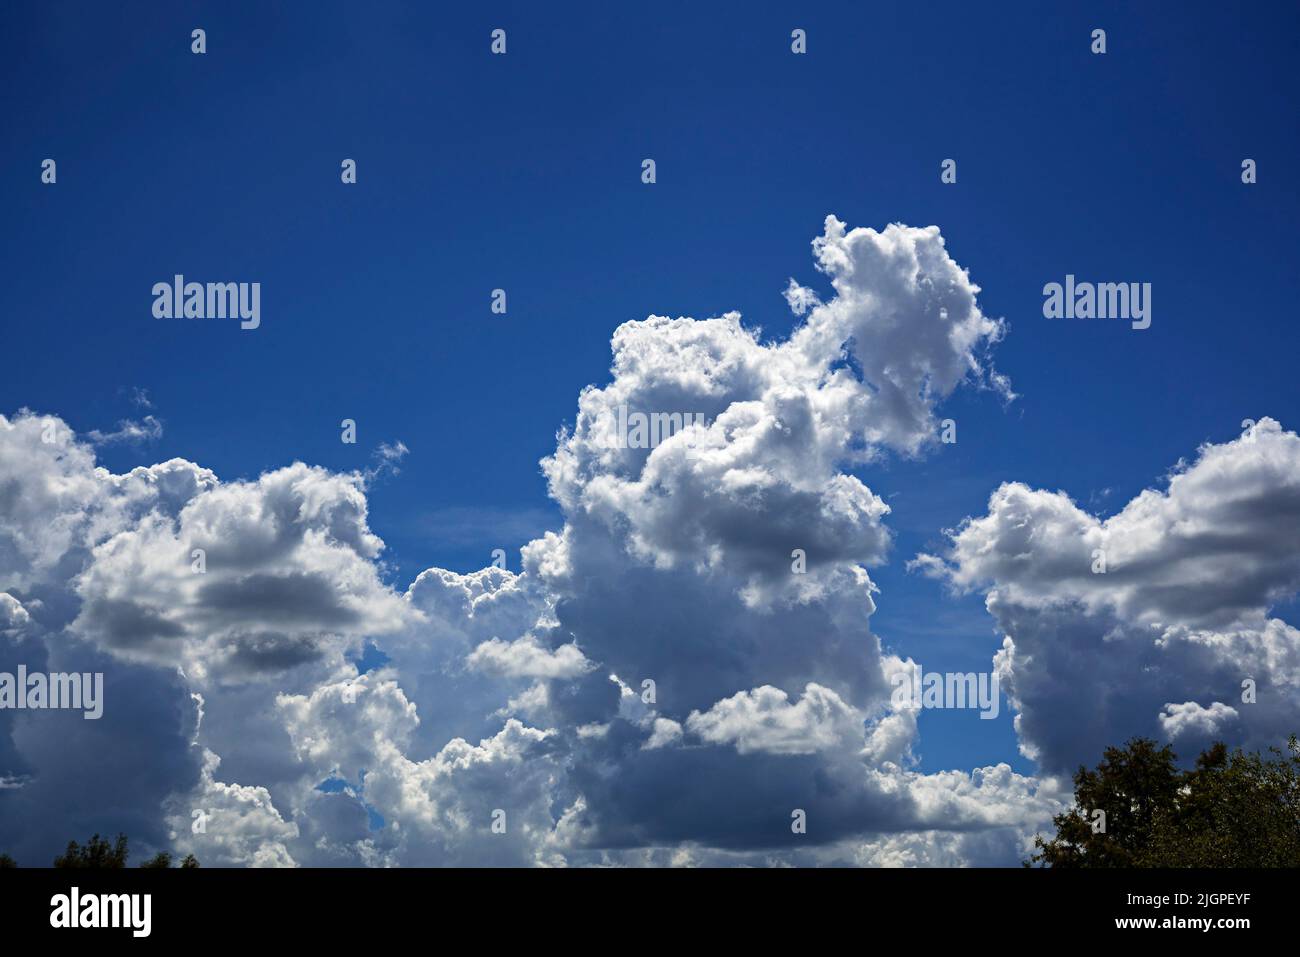 Splendido cielo blu popolato da nuvole bianche soffose in una splendida giornata estiva nella Florida centrale settentrionale. Foto Stock